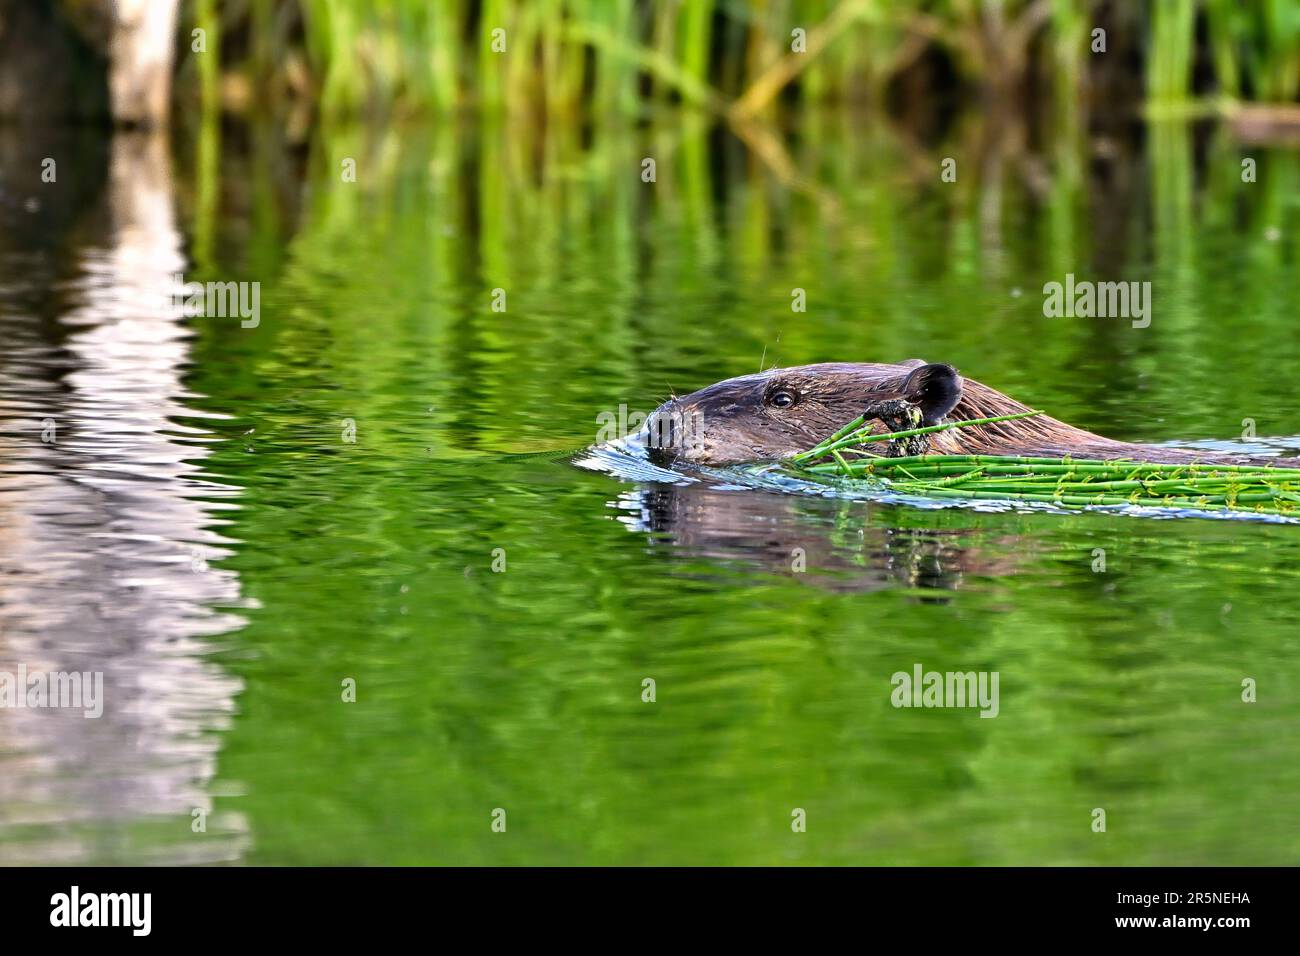 Un castor canadien adulte « Castor canadensis », nageant avec une bouchée de friandises dans une zone humide du Canada rural de l'Alberta Banque D'Images